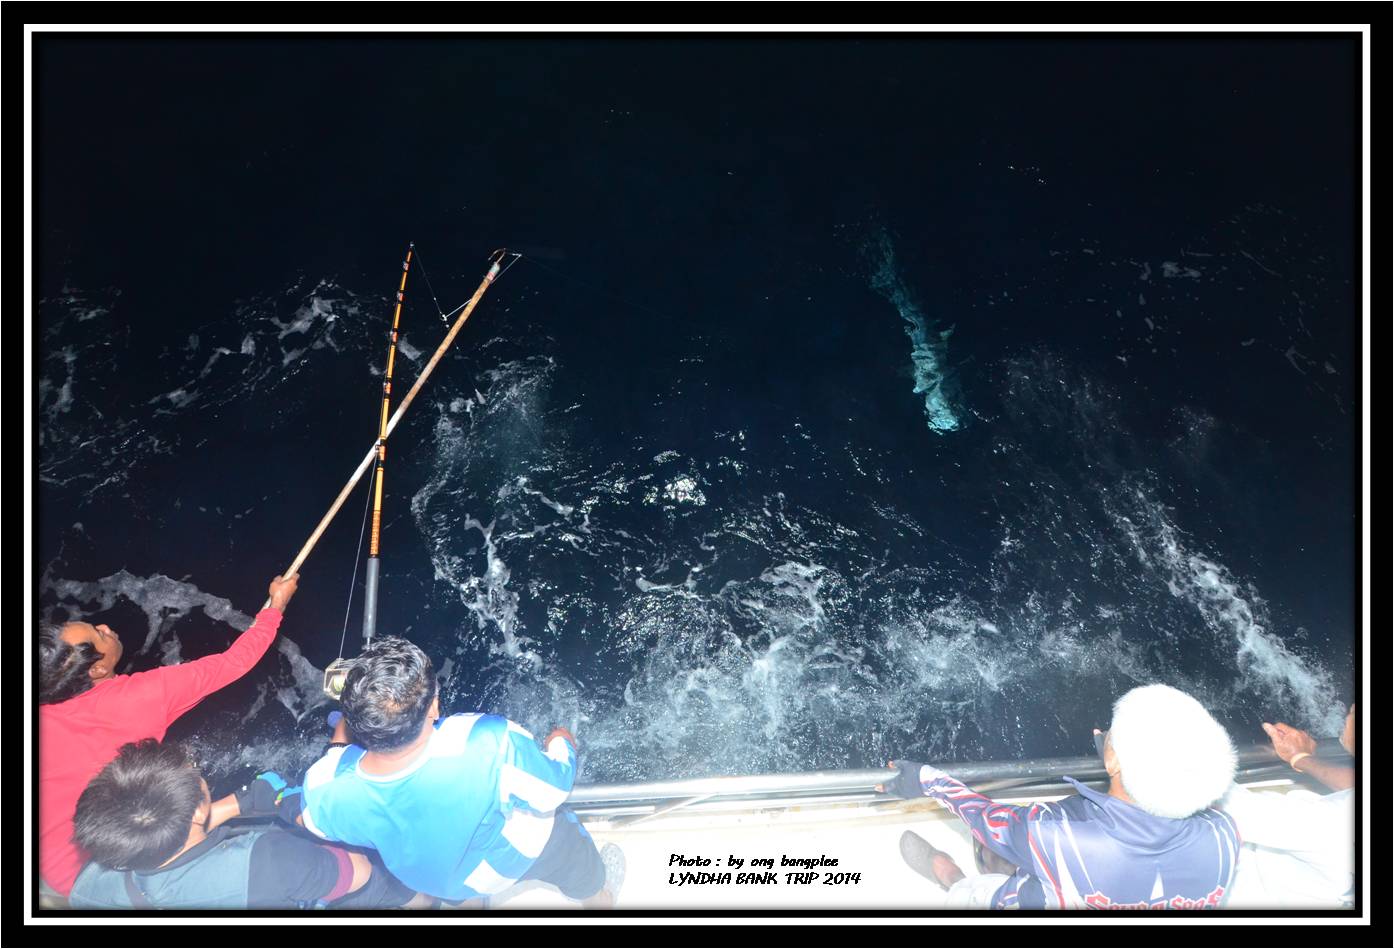 เวลาผ่านไปซักประมาณ 10 นาที เจ้าตัวใต้น้ำก็โผล่มาให้เราเห็นเป็นฉลามเสือ น้ำหนักกะประมาณซัก 70-80 กิโ